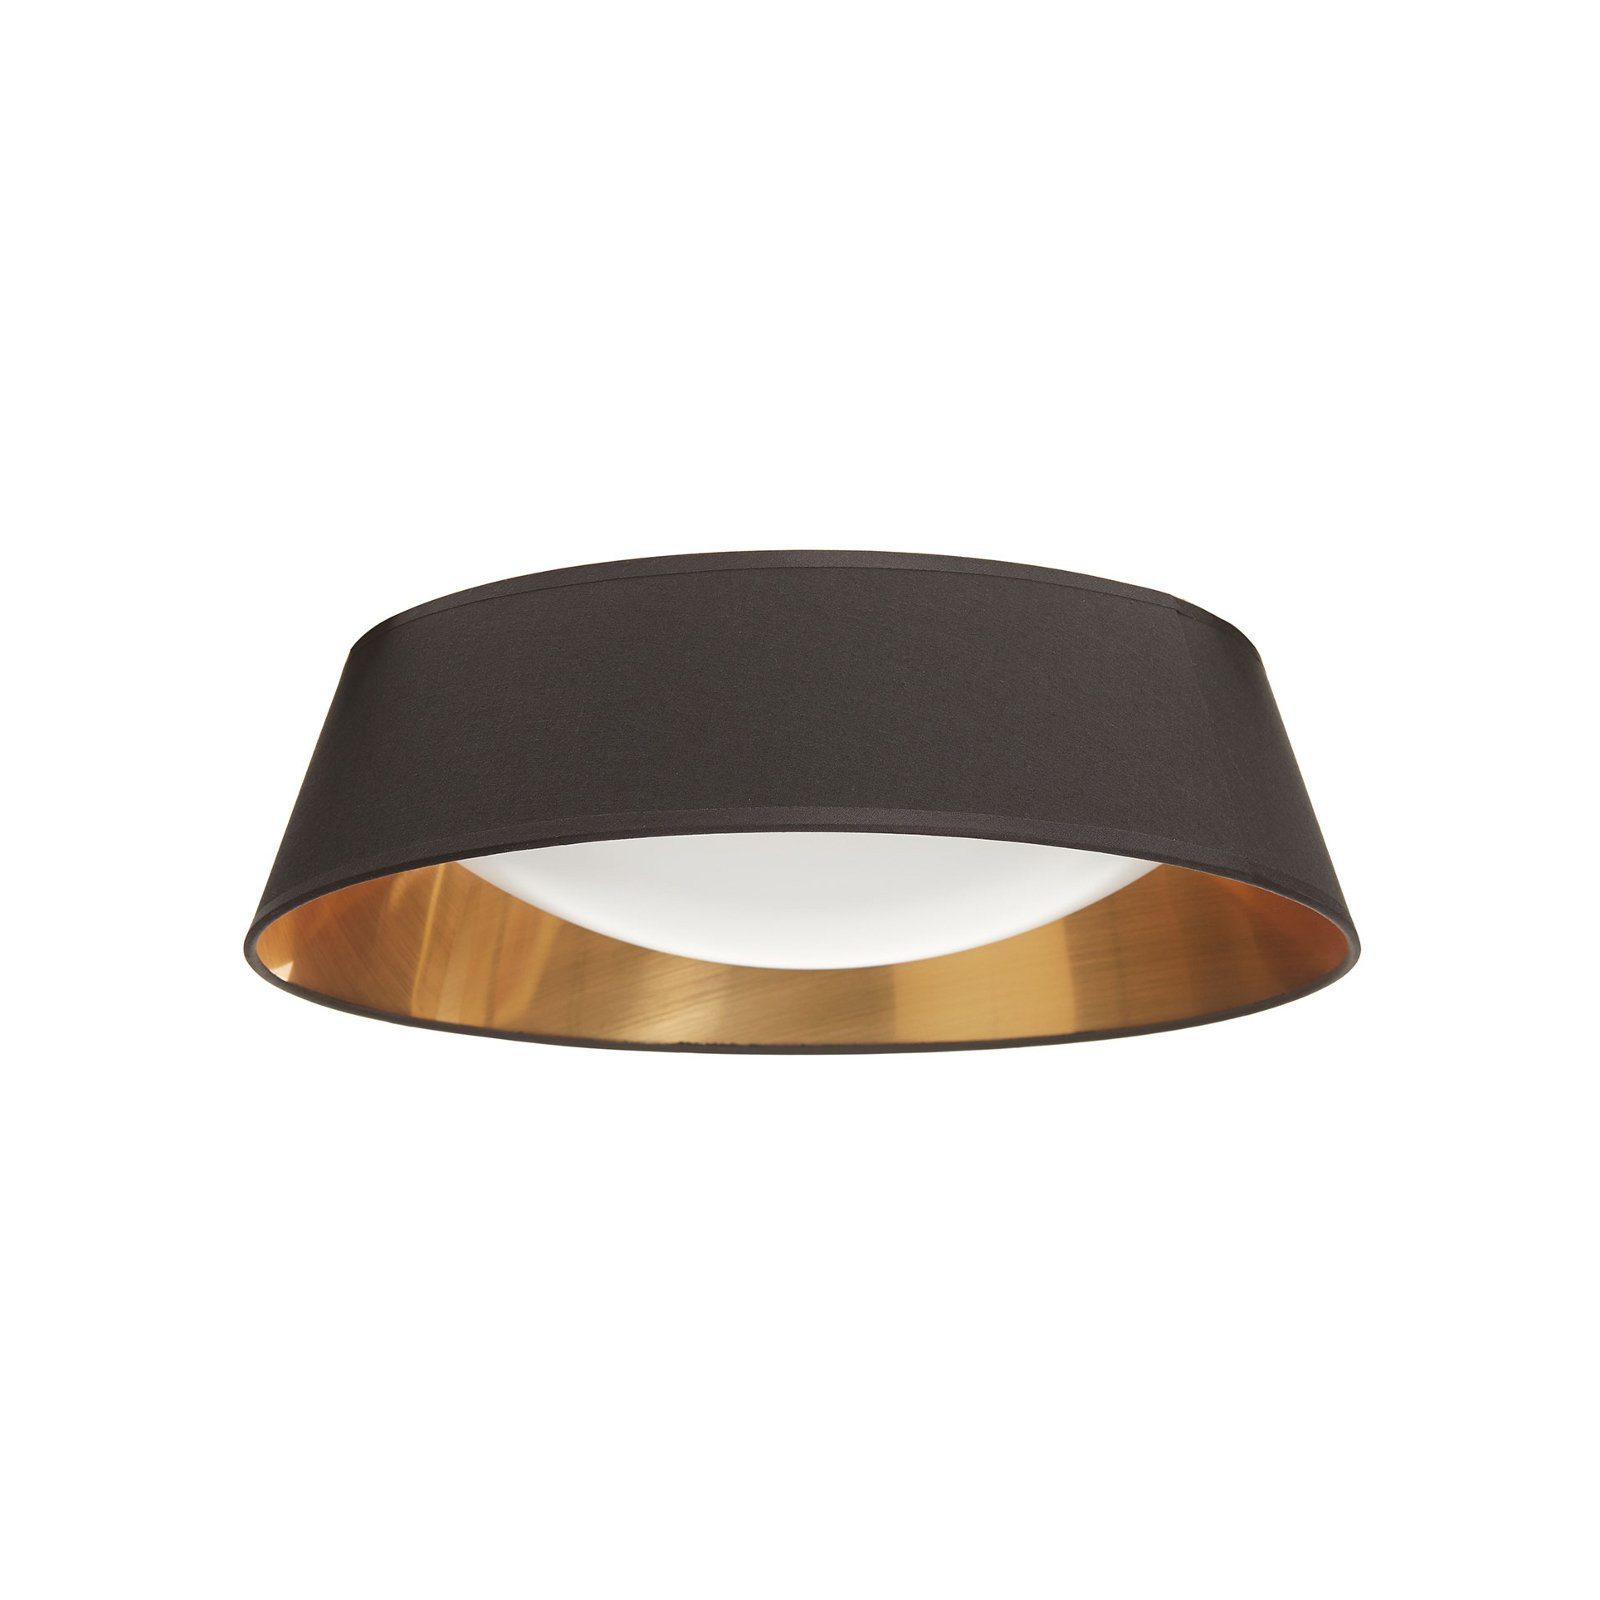 U crnoj i zlatnoj boji - okrugla LED stropna svjetiljka Ponts